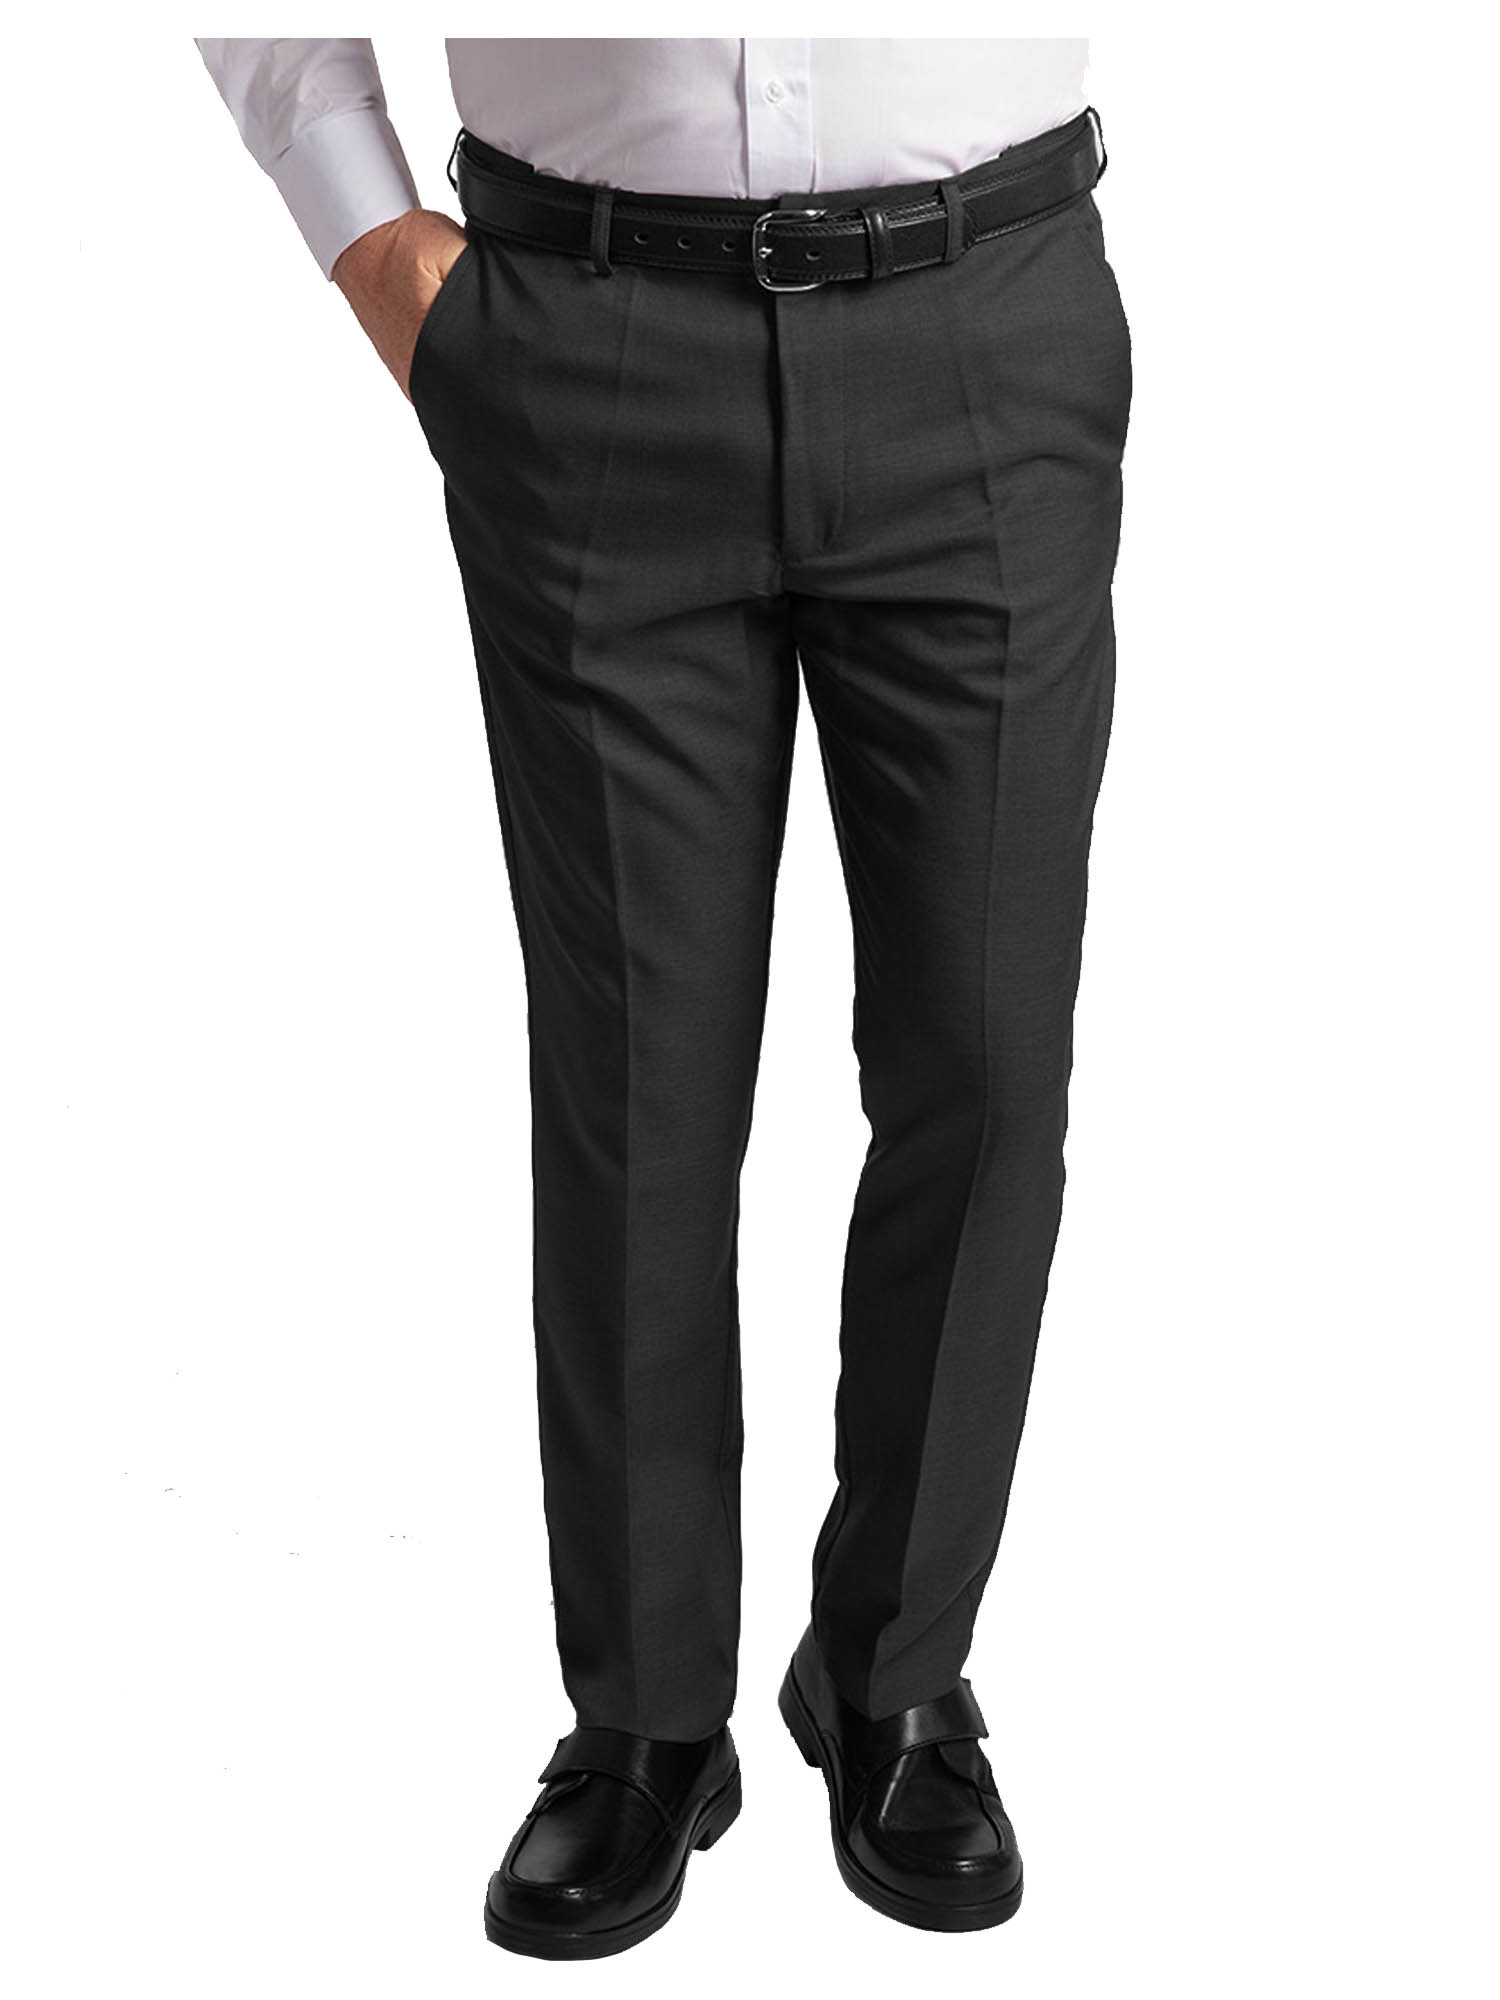 Mens Active Waist Trouser 30-60 Expanding Waist Single Pleat Stain Resistant